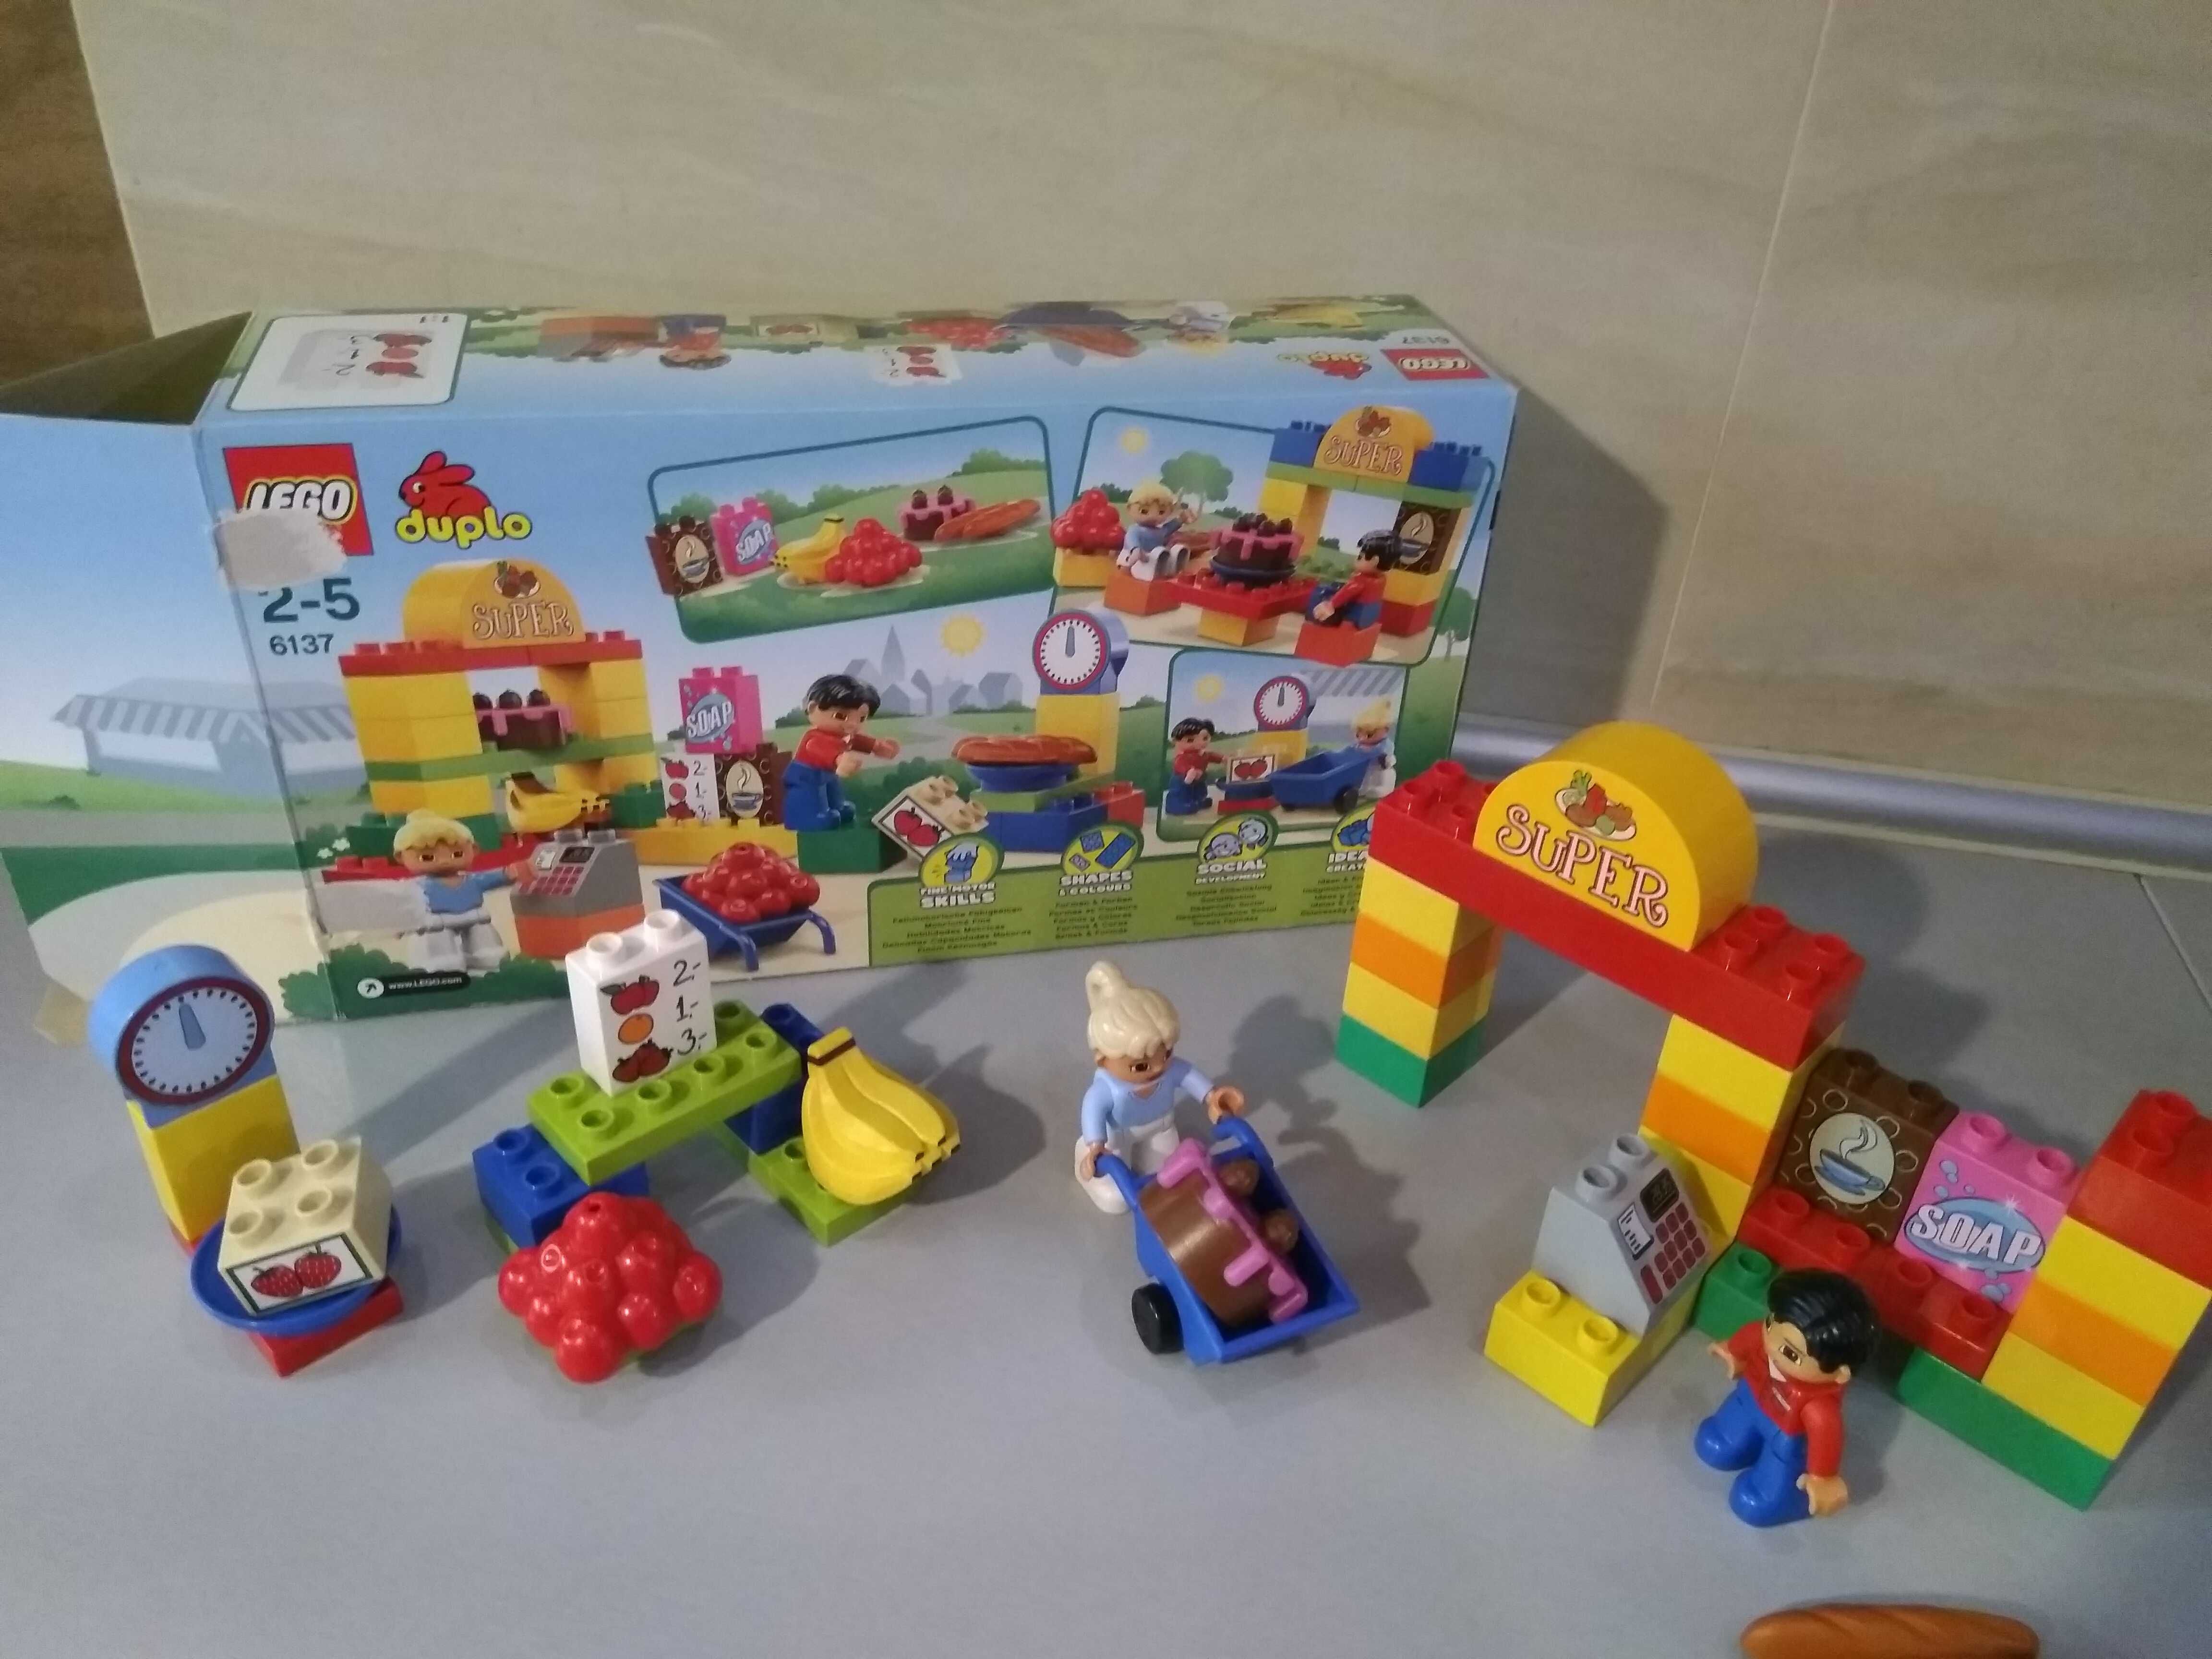 Lego DUPLO 6137 - Sklep/ Market